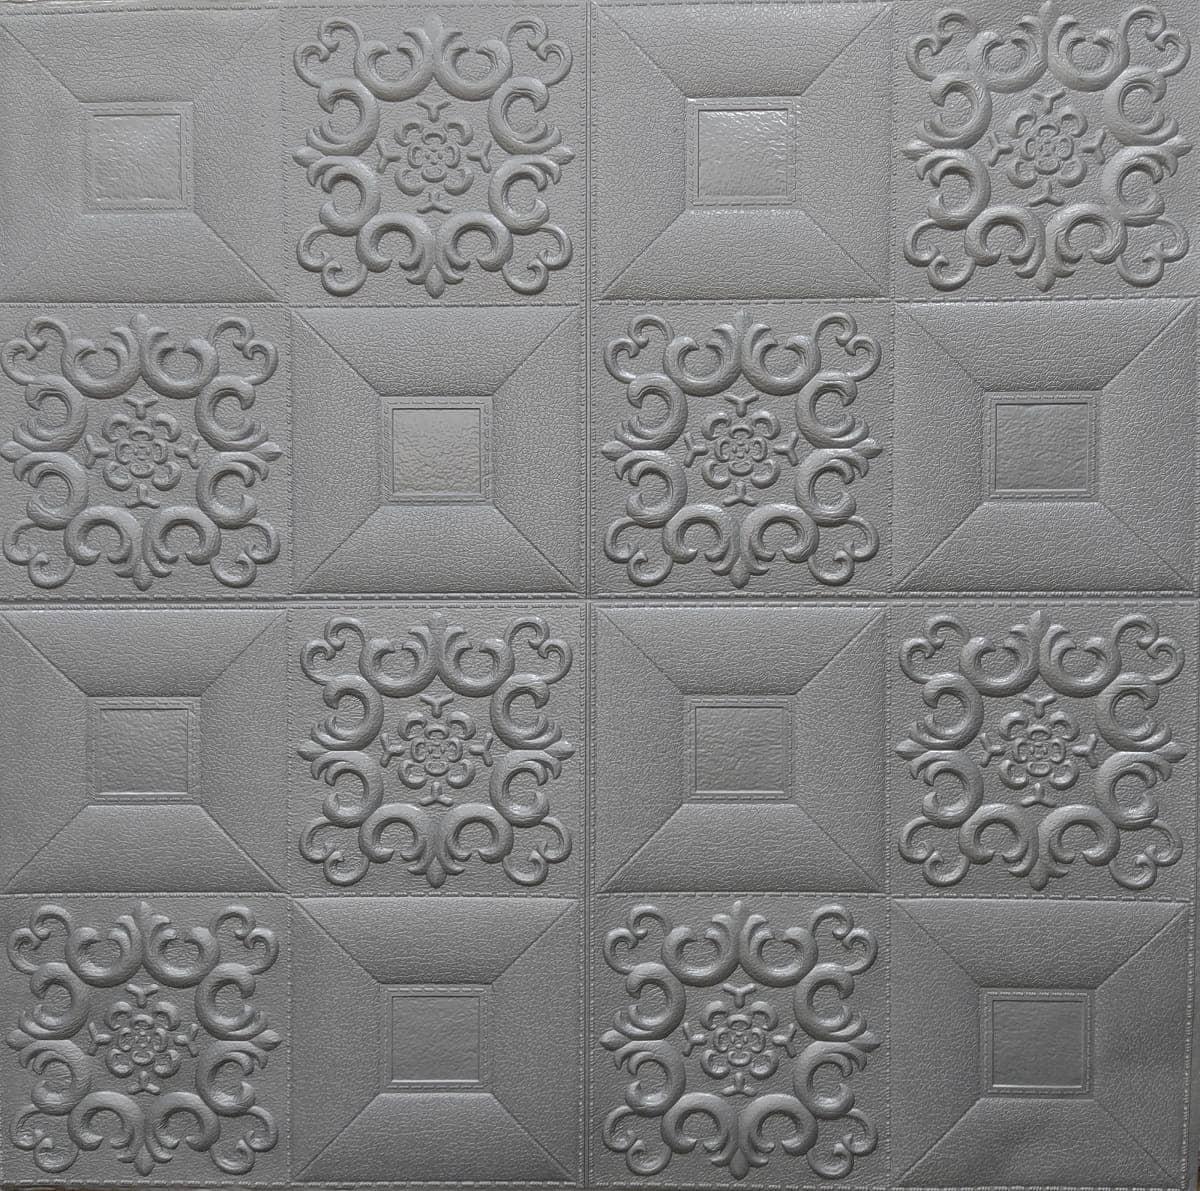 Самоклеюча декоративна настінно-стельова панель срібний візерунок 700x700x5мм (181) SW-00000481 - купить в магазине НоутКомплект по цене 160 грн.